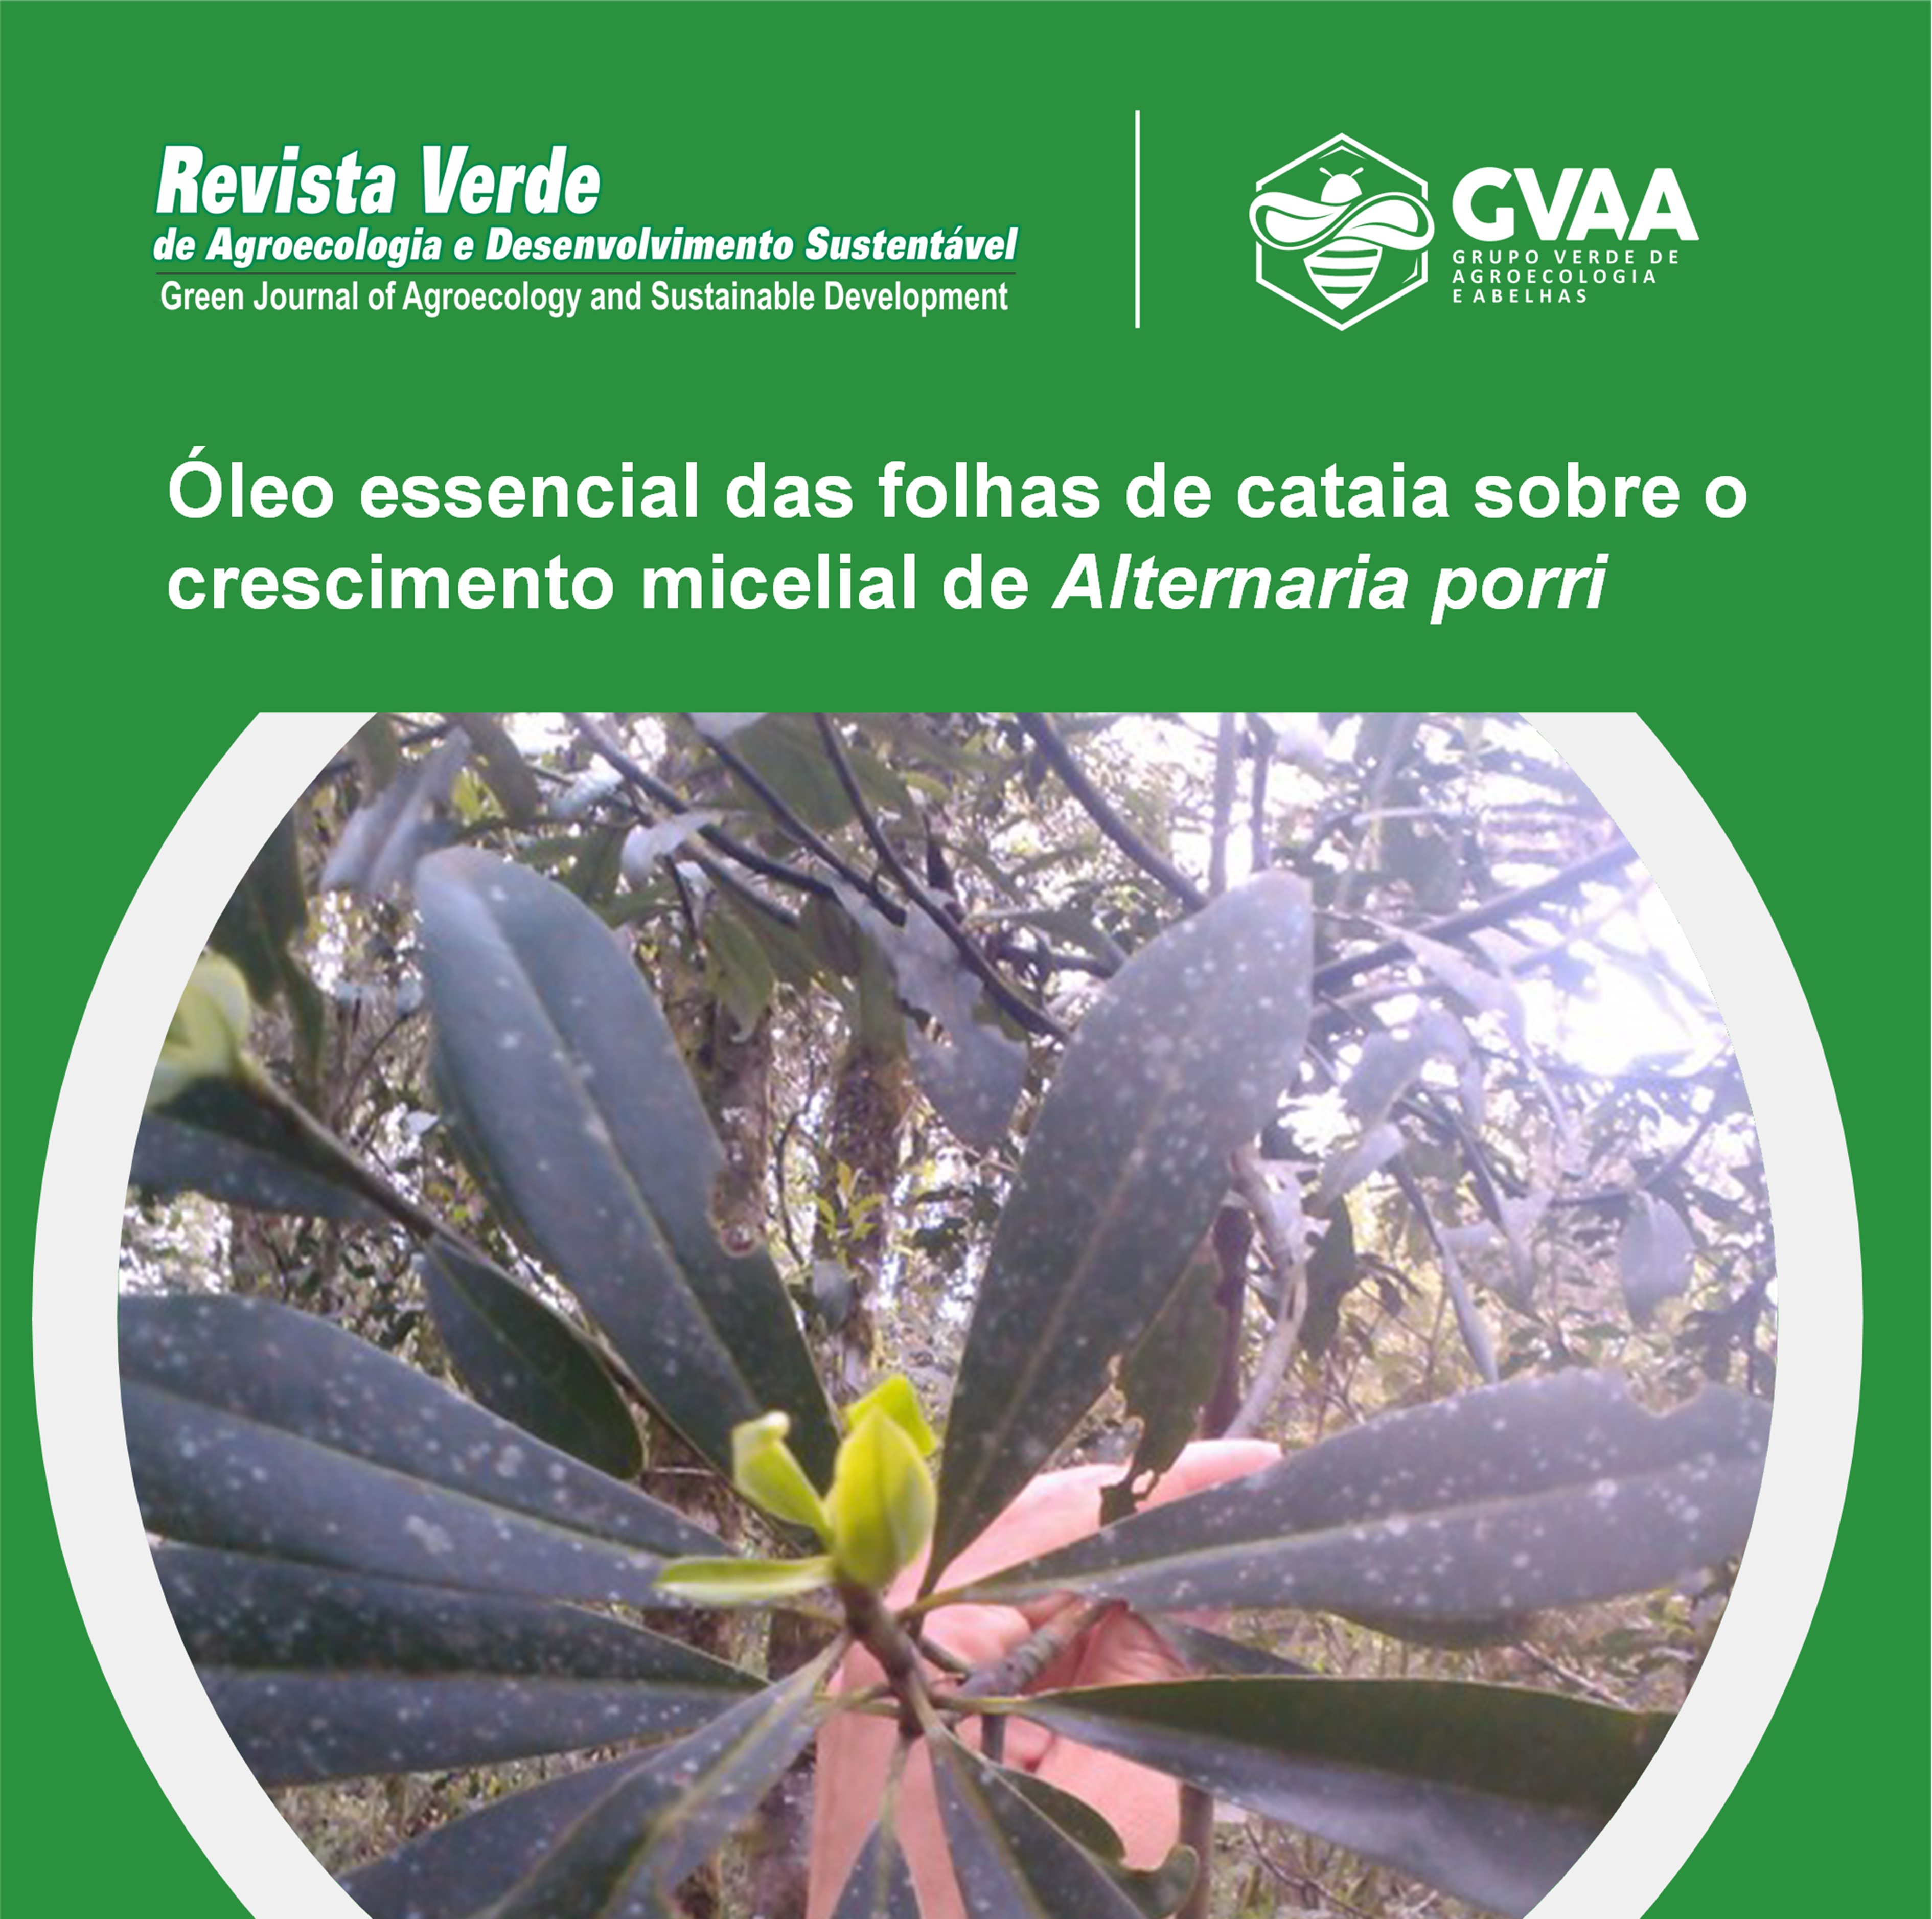 Óleo essencial das folhas de cataia (Drimys brasiliensis) sobre o crescimento micelial de Alternaria porri